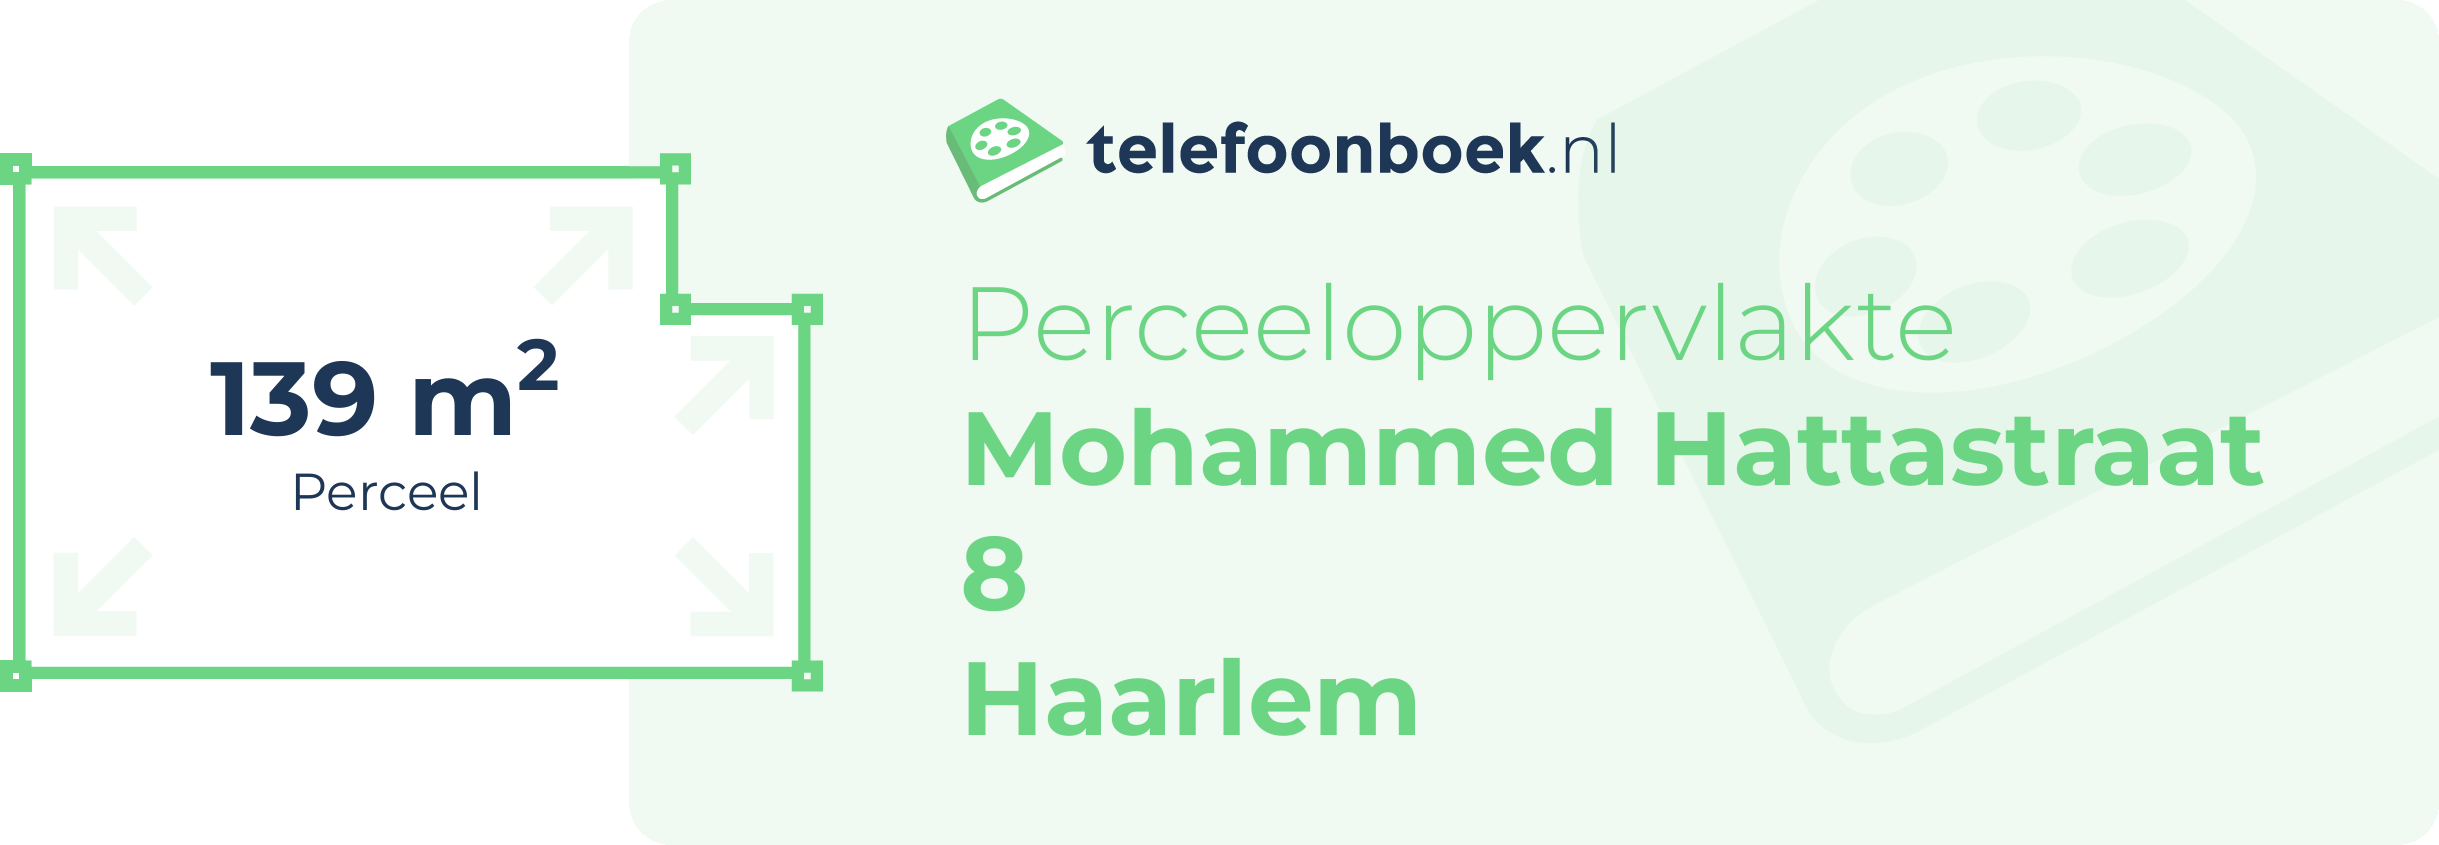 Perceeloppervlakte Mohammed Hattastraat 8 Haarlem